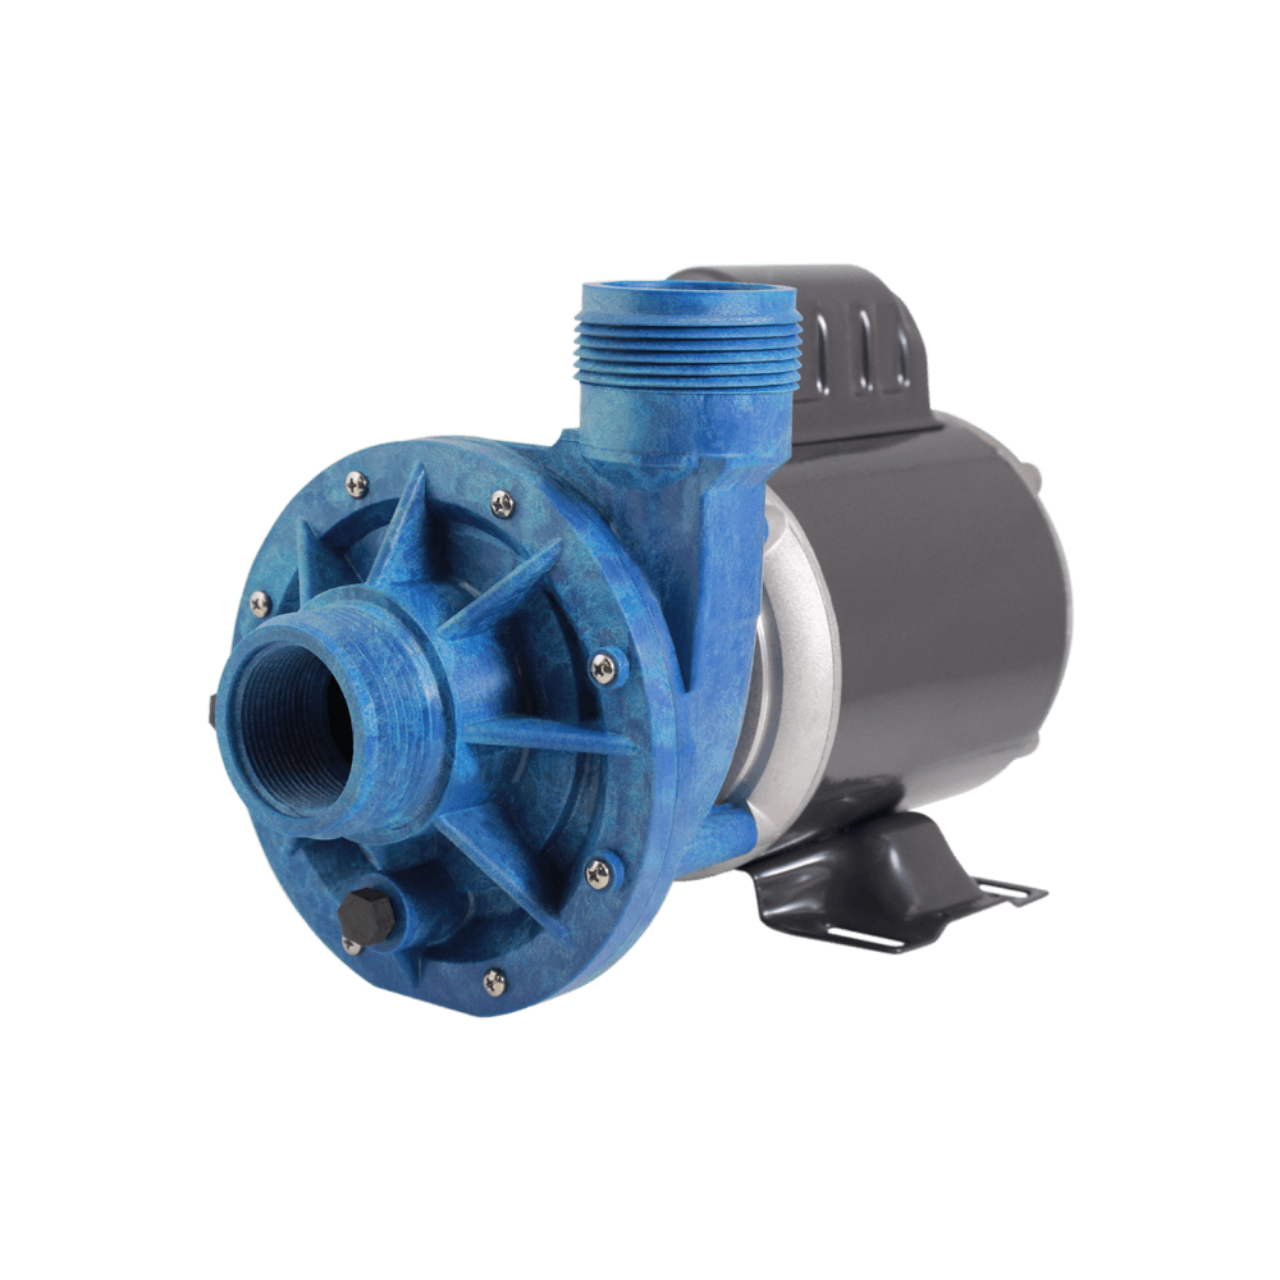 Aqua-Flo™ Circ-Master CMHP - 24-hour circulation pump